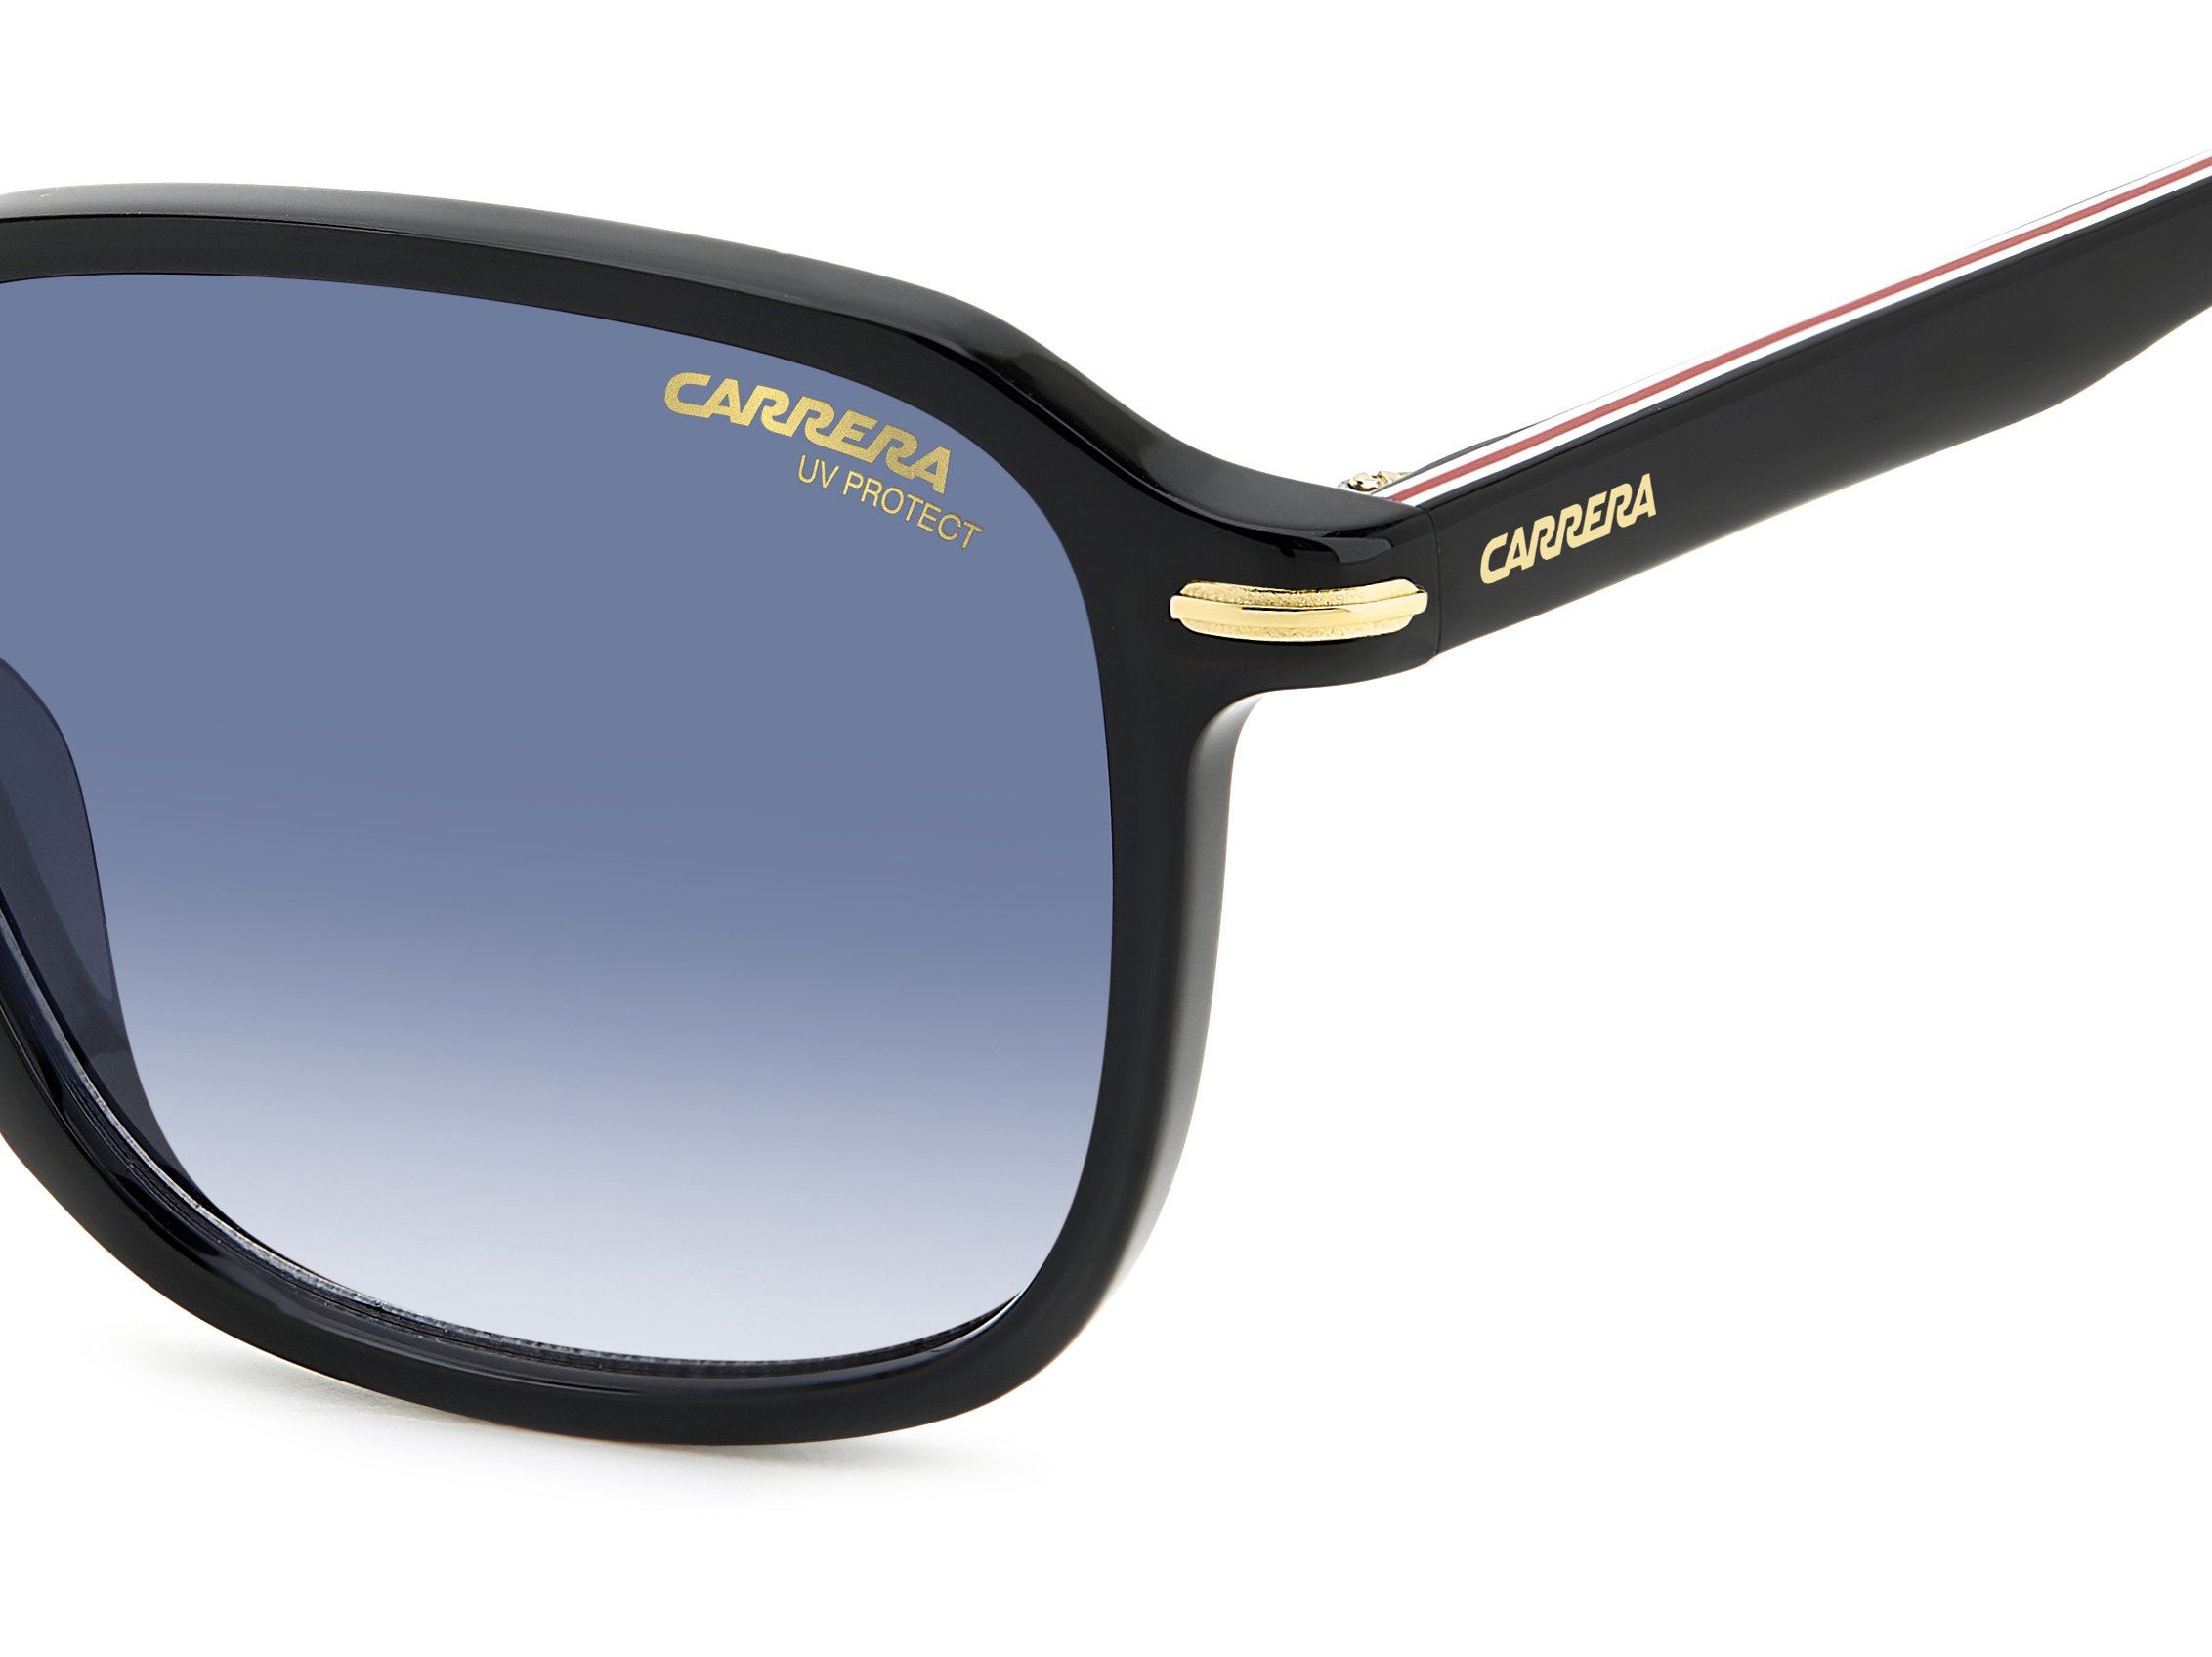 Das Bild zeigt die Sonnenbrille 328/S 807 von der Marke Carrera in schwarz.